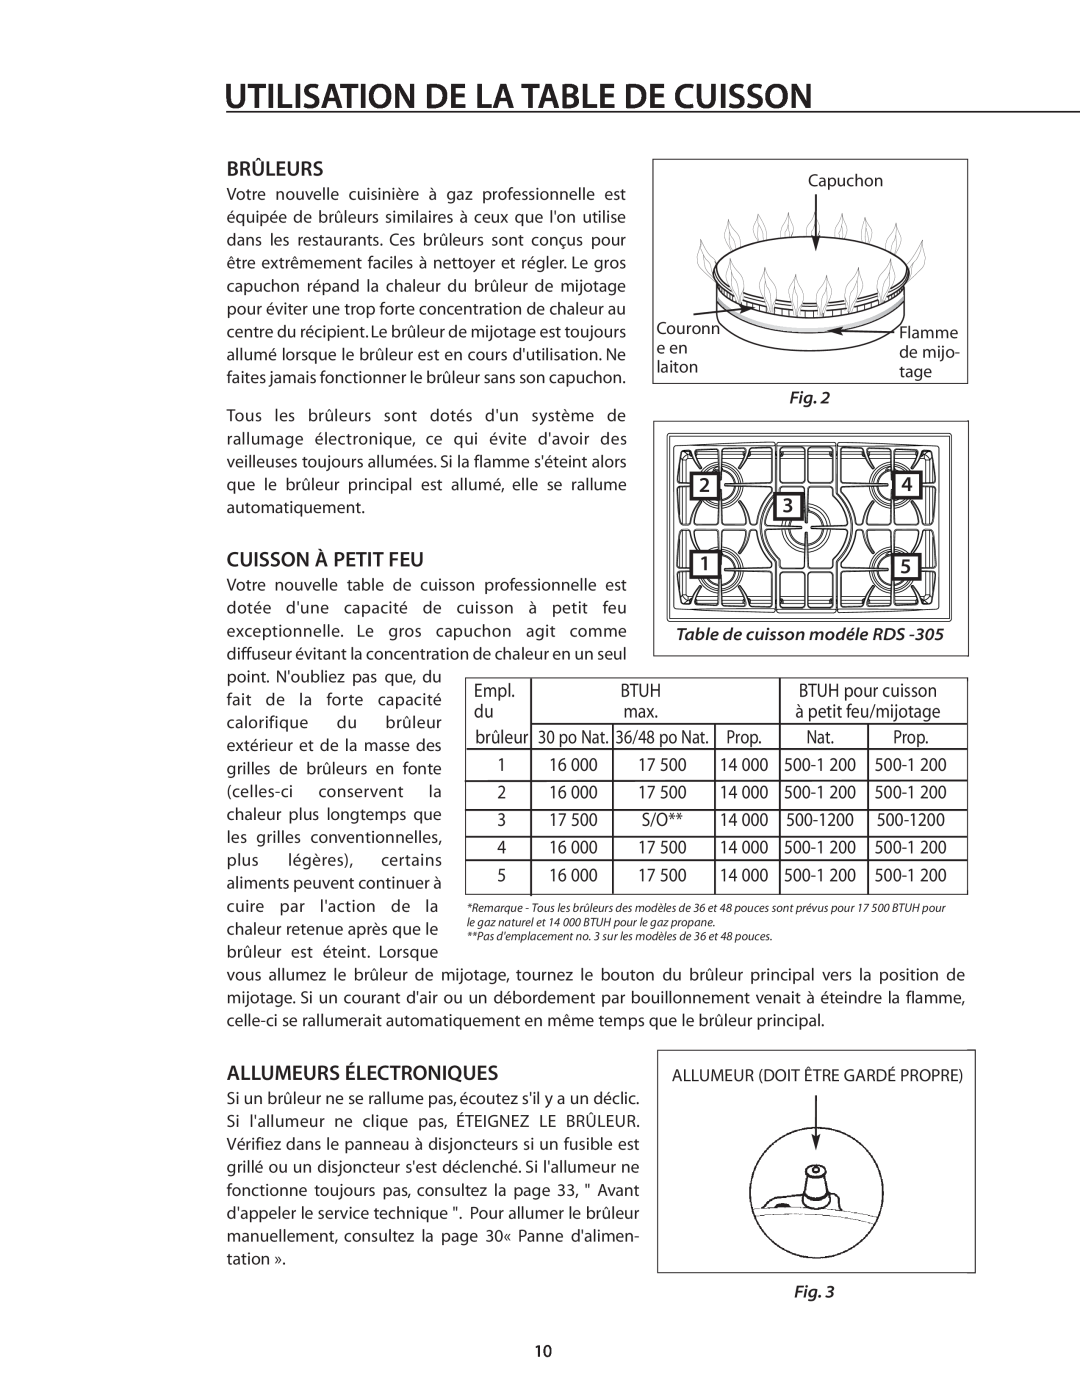 DCS RDS-305 manual Utilisation De La Table De Cuisson, Brûleurs, Cuisson À Petit Feu, Allumeurs Électroniques 